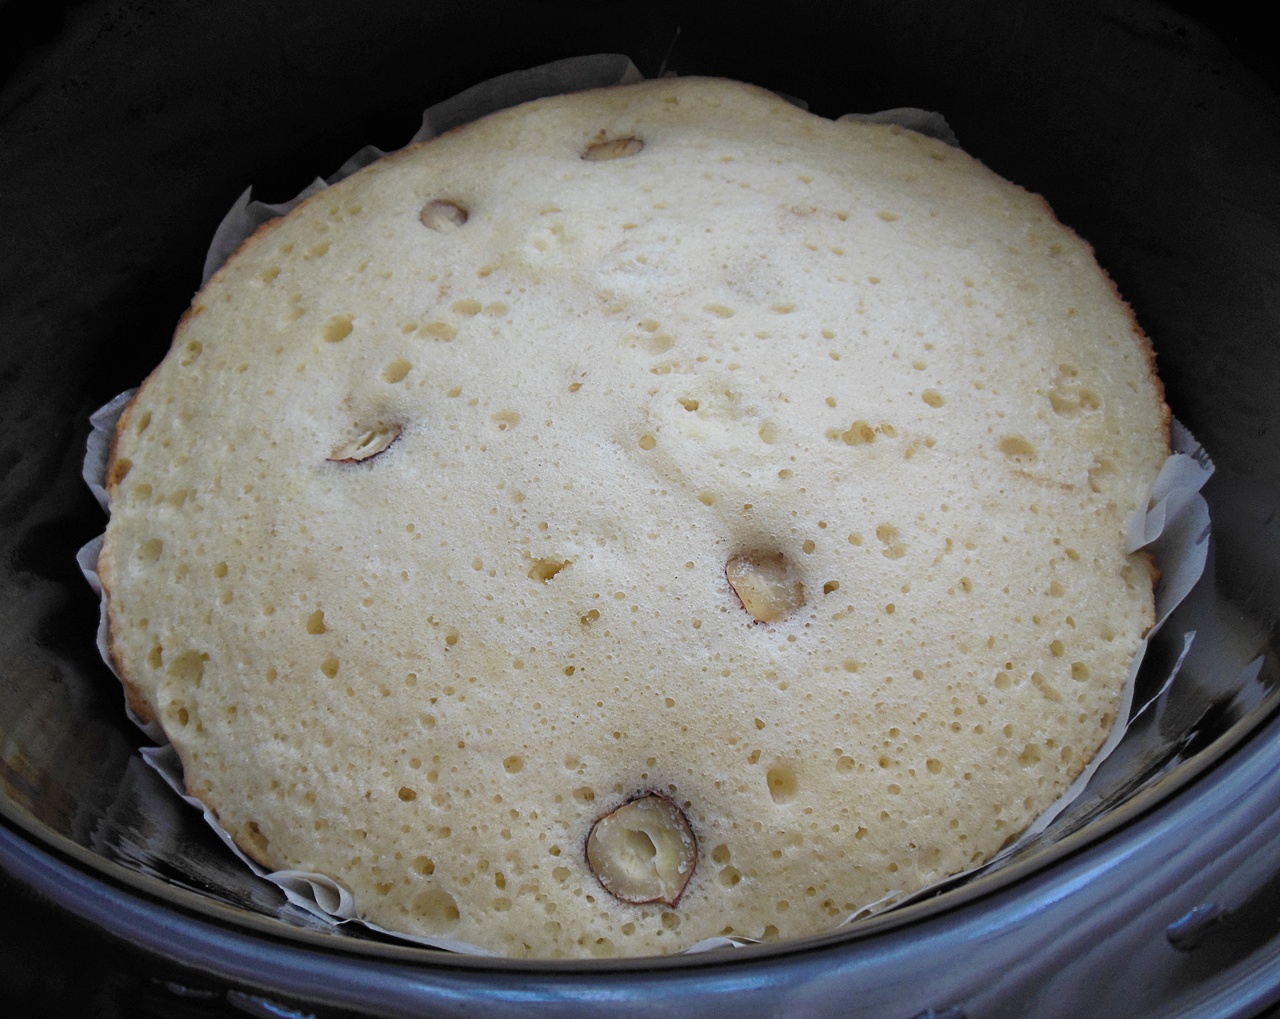 Prajitura cu prune si alune de padure la slow cooker Crock-Pot 4,7 L